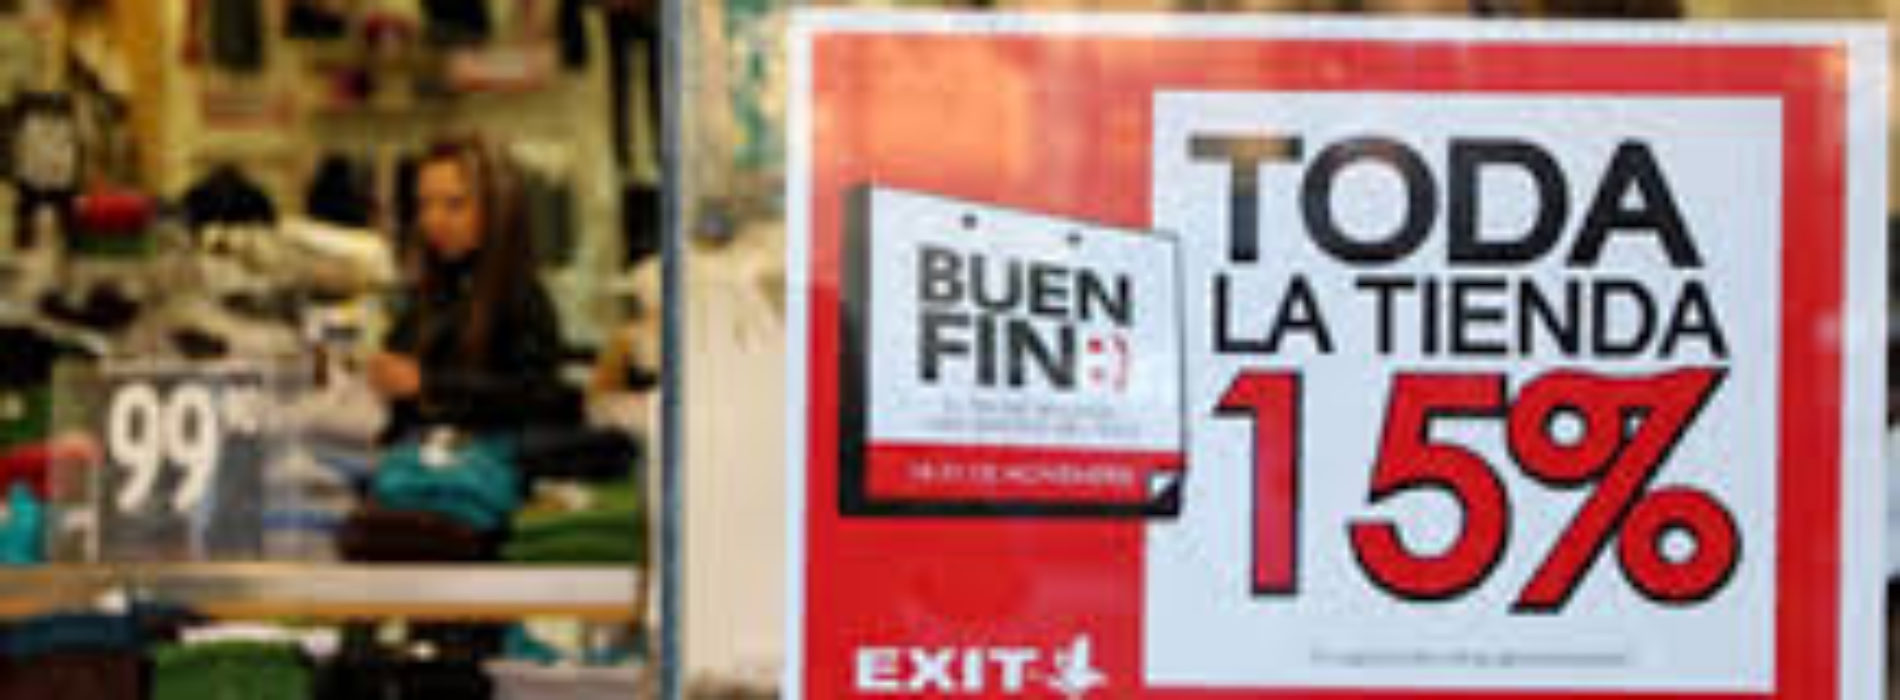 Estiman derrama económica de 100 mdp durante el Buen Fin en
Oaxaca